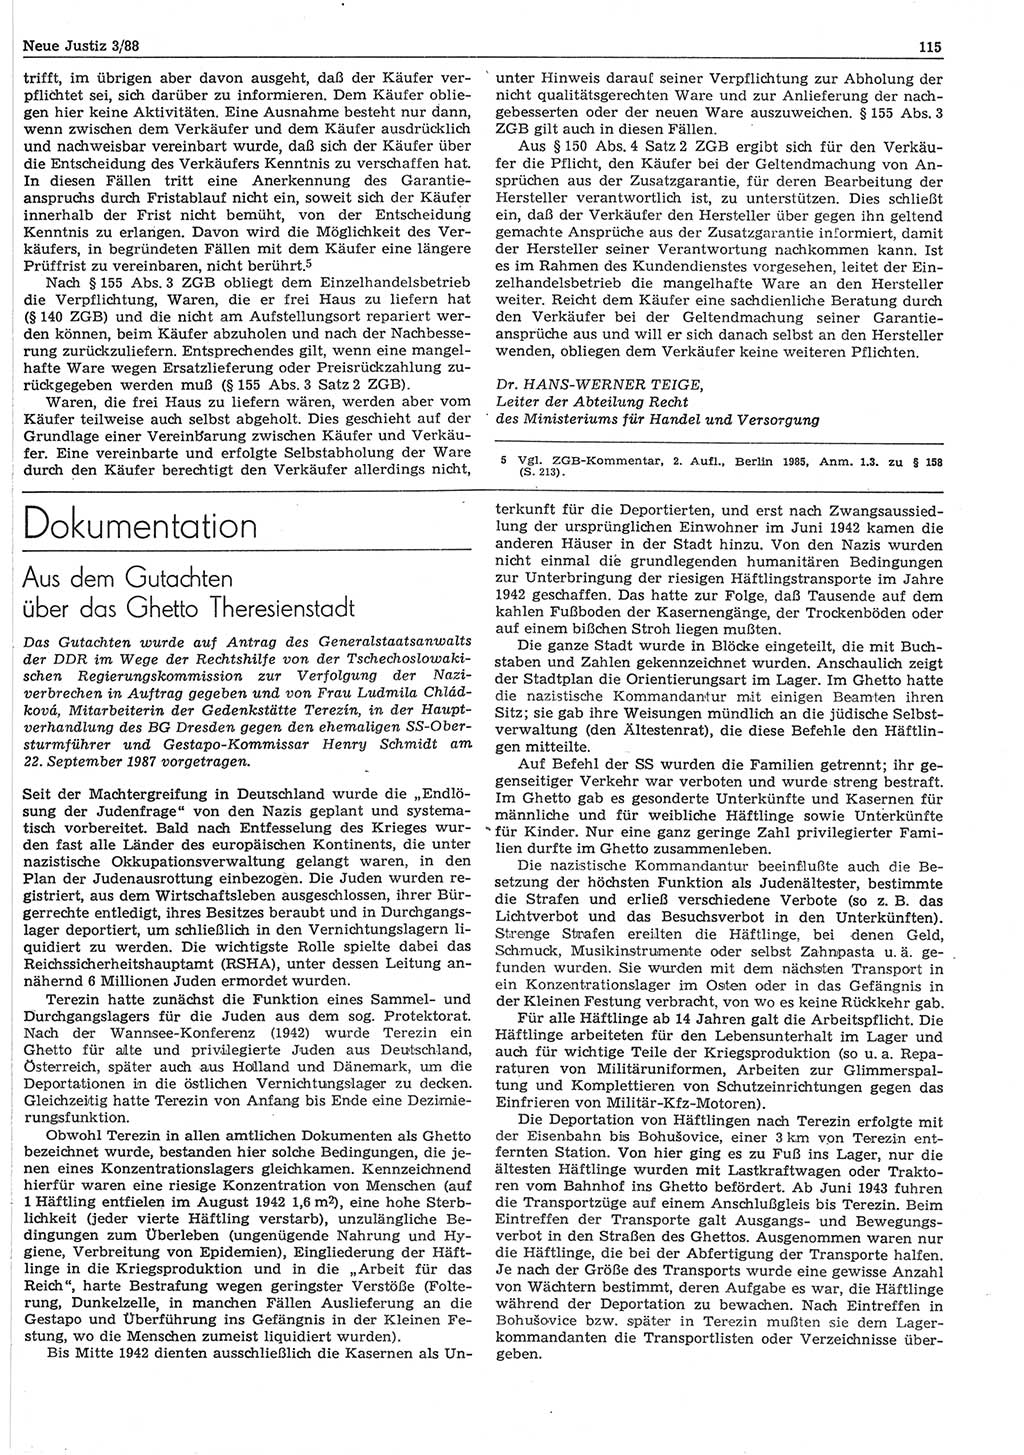 Neue Justiz (NJ), Zeitschrift für sozialistisches Recht und Gesetzlichkeit [Deutsche Demokratische Republik (DDR)], 42. Jahrgang 1988, Seite 115 (NJ DDR 1988, S. 115)